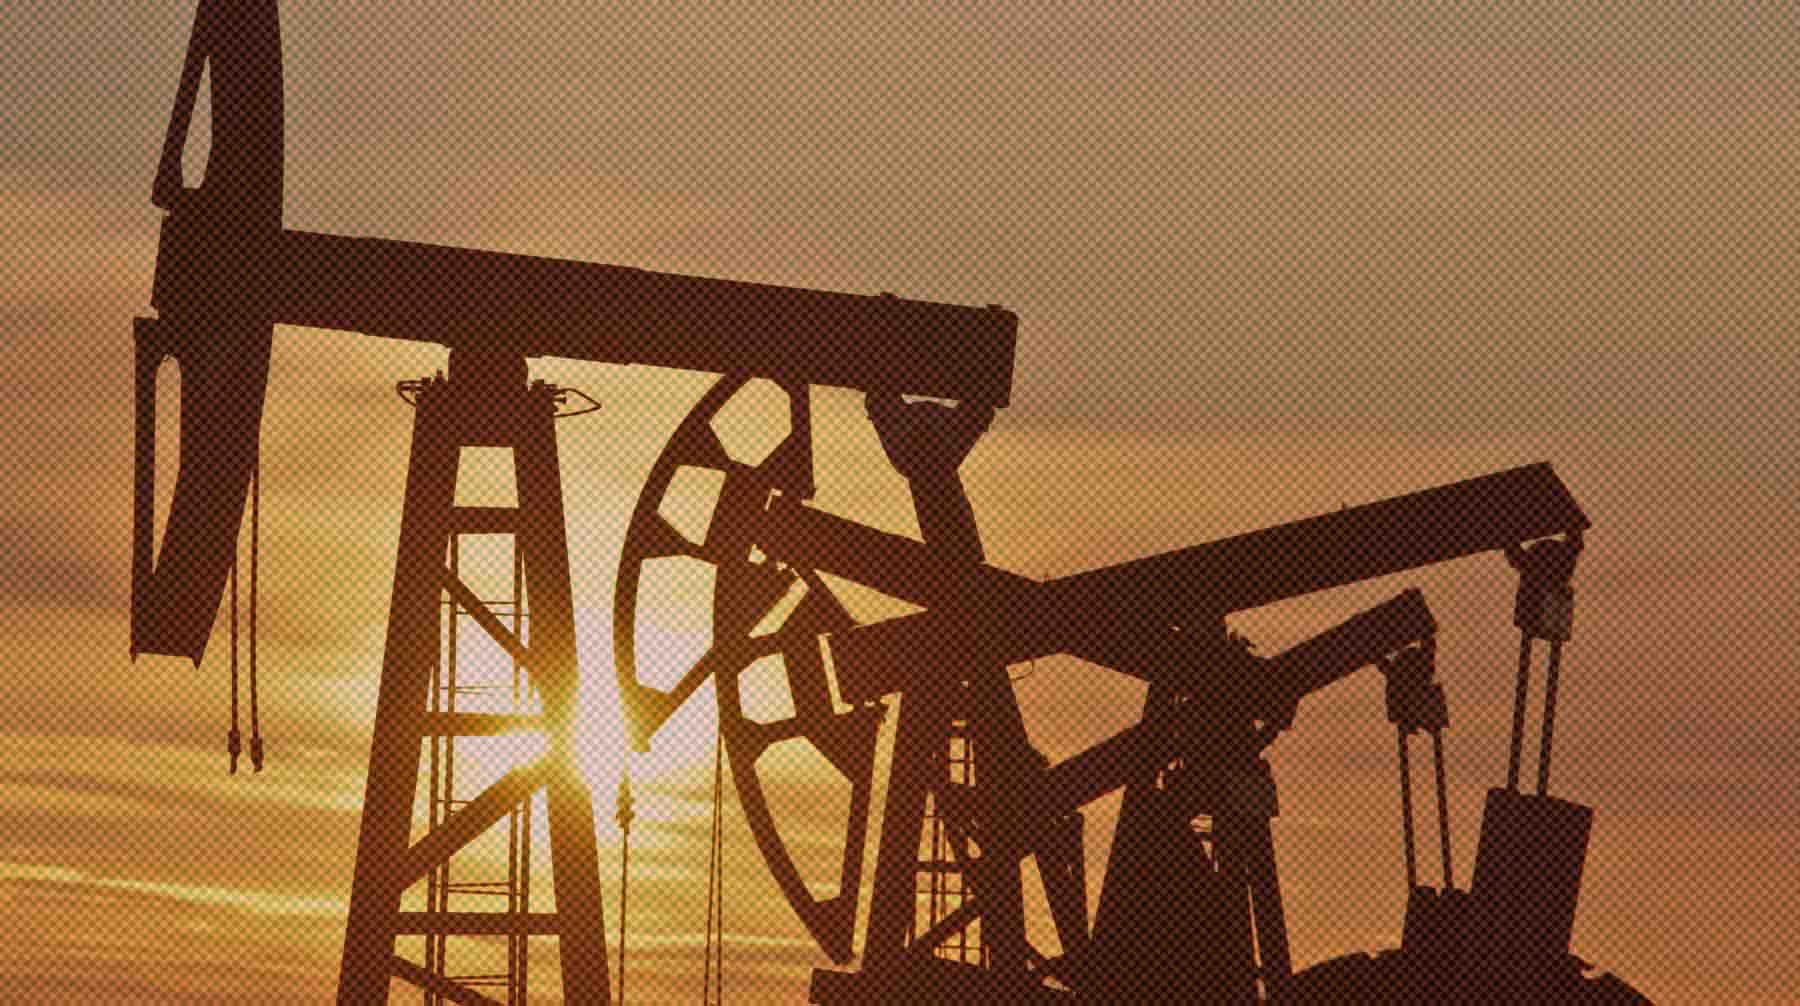 Dailystorm - Нефти и газа у России осталось на 30-50 лет